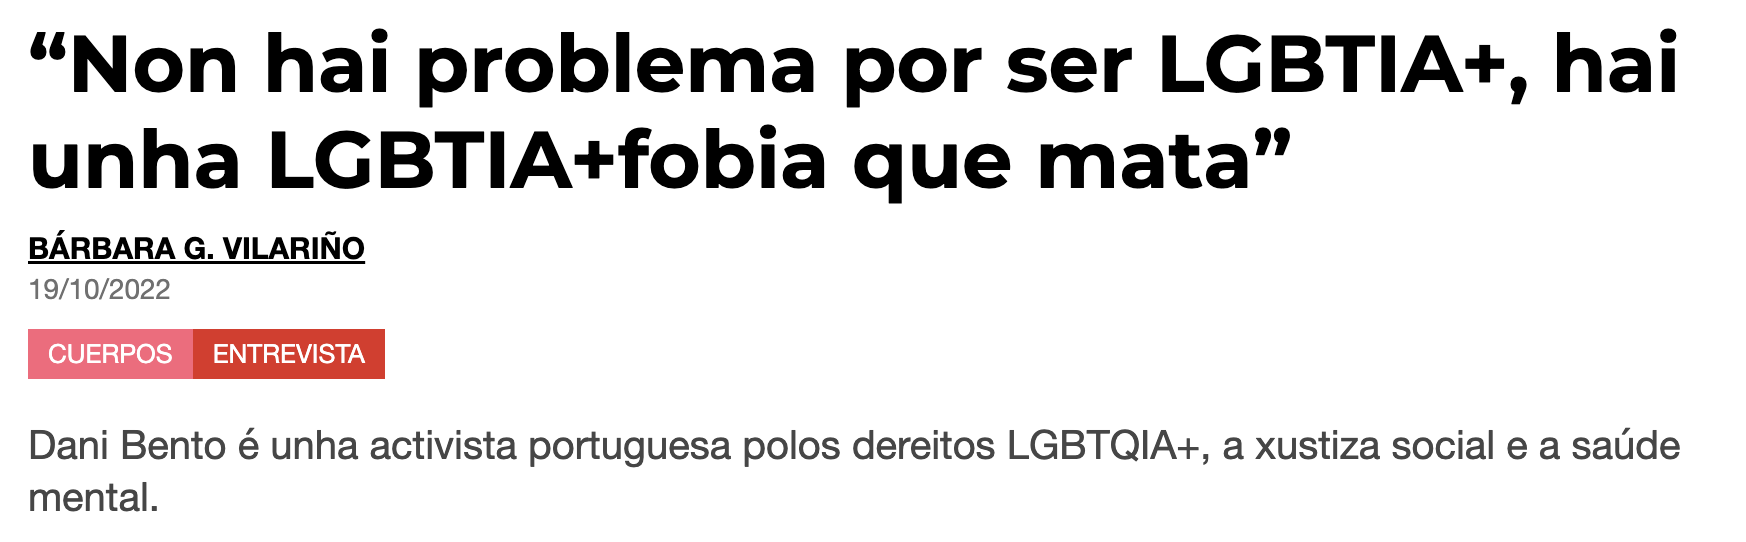 Pikara Magazine: “Non hai problema por ser LGBTIA+, hai unha LGBTIA+fobia que mata”